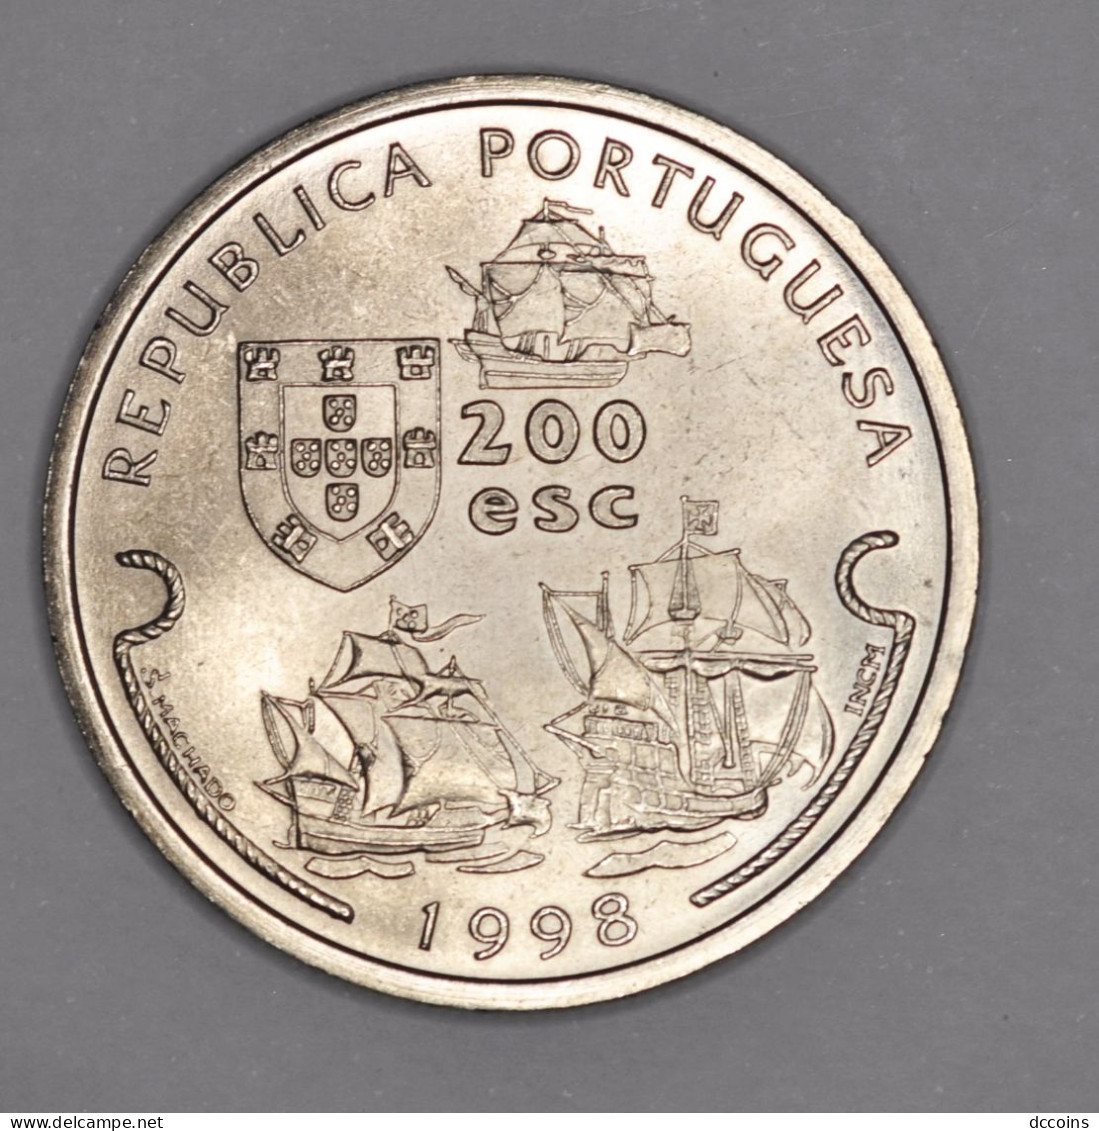 Descobrimentos Portugueses 9ª Serie 200  Esc. Vasco Da Gama Year 1998 - Portogallo